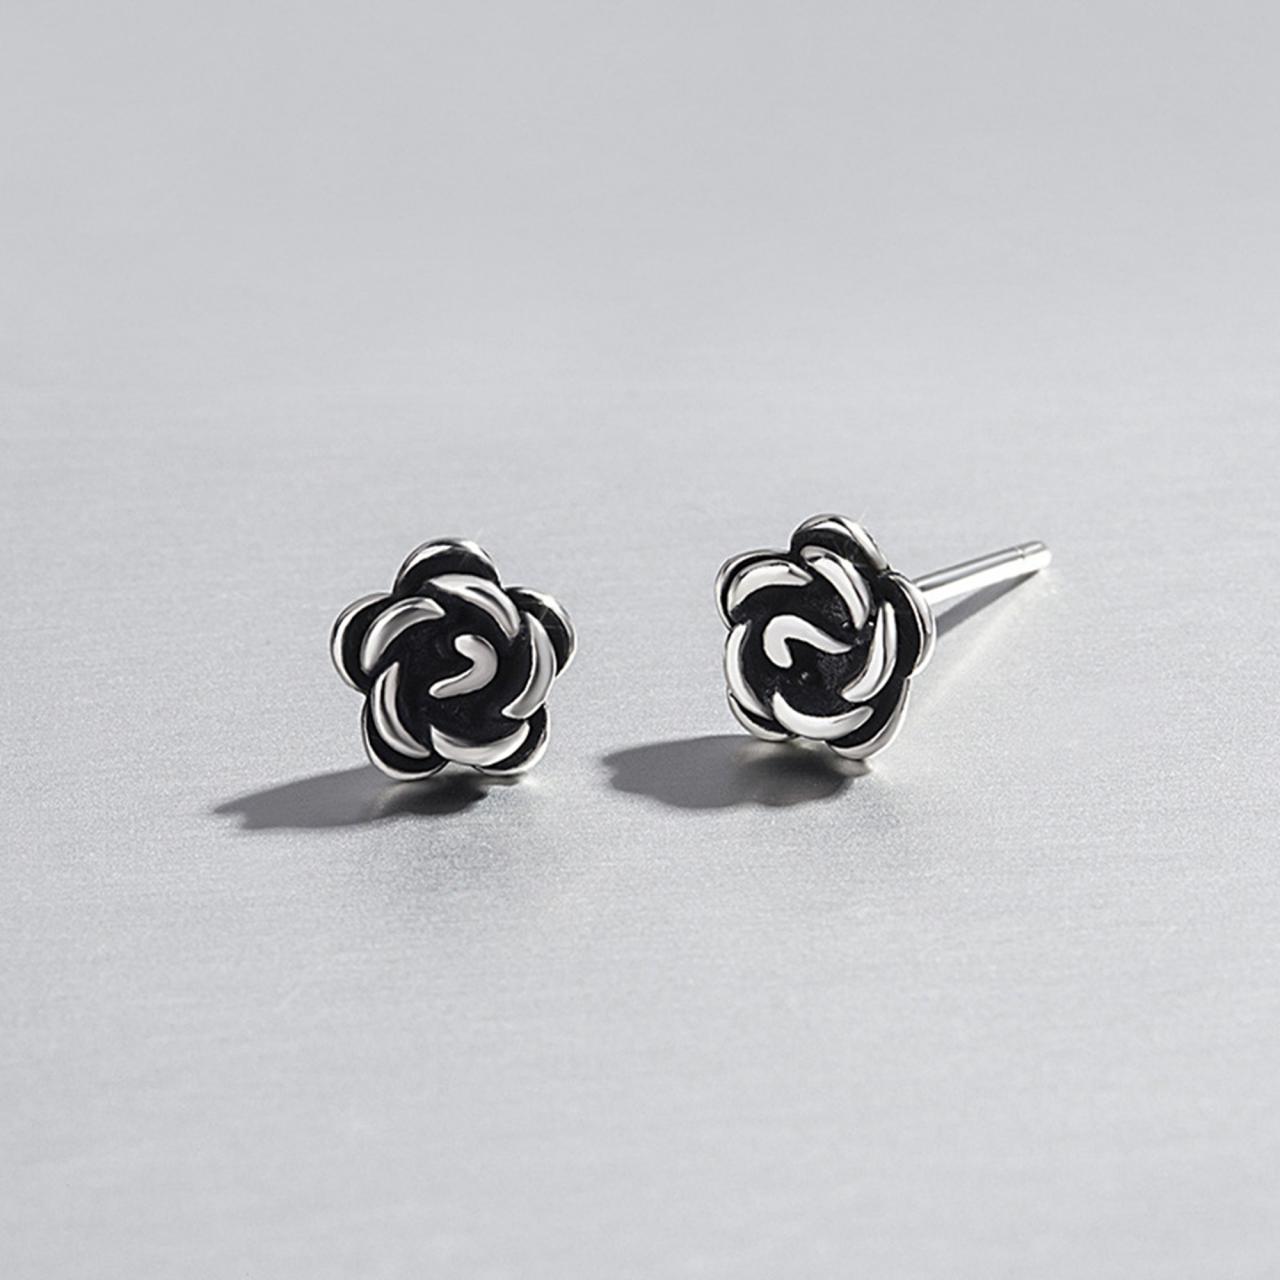 S925 Silver Rose Flower Ear Studs, Post Earrings, Women Earrings, Everyday Earrings